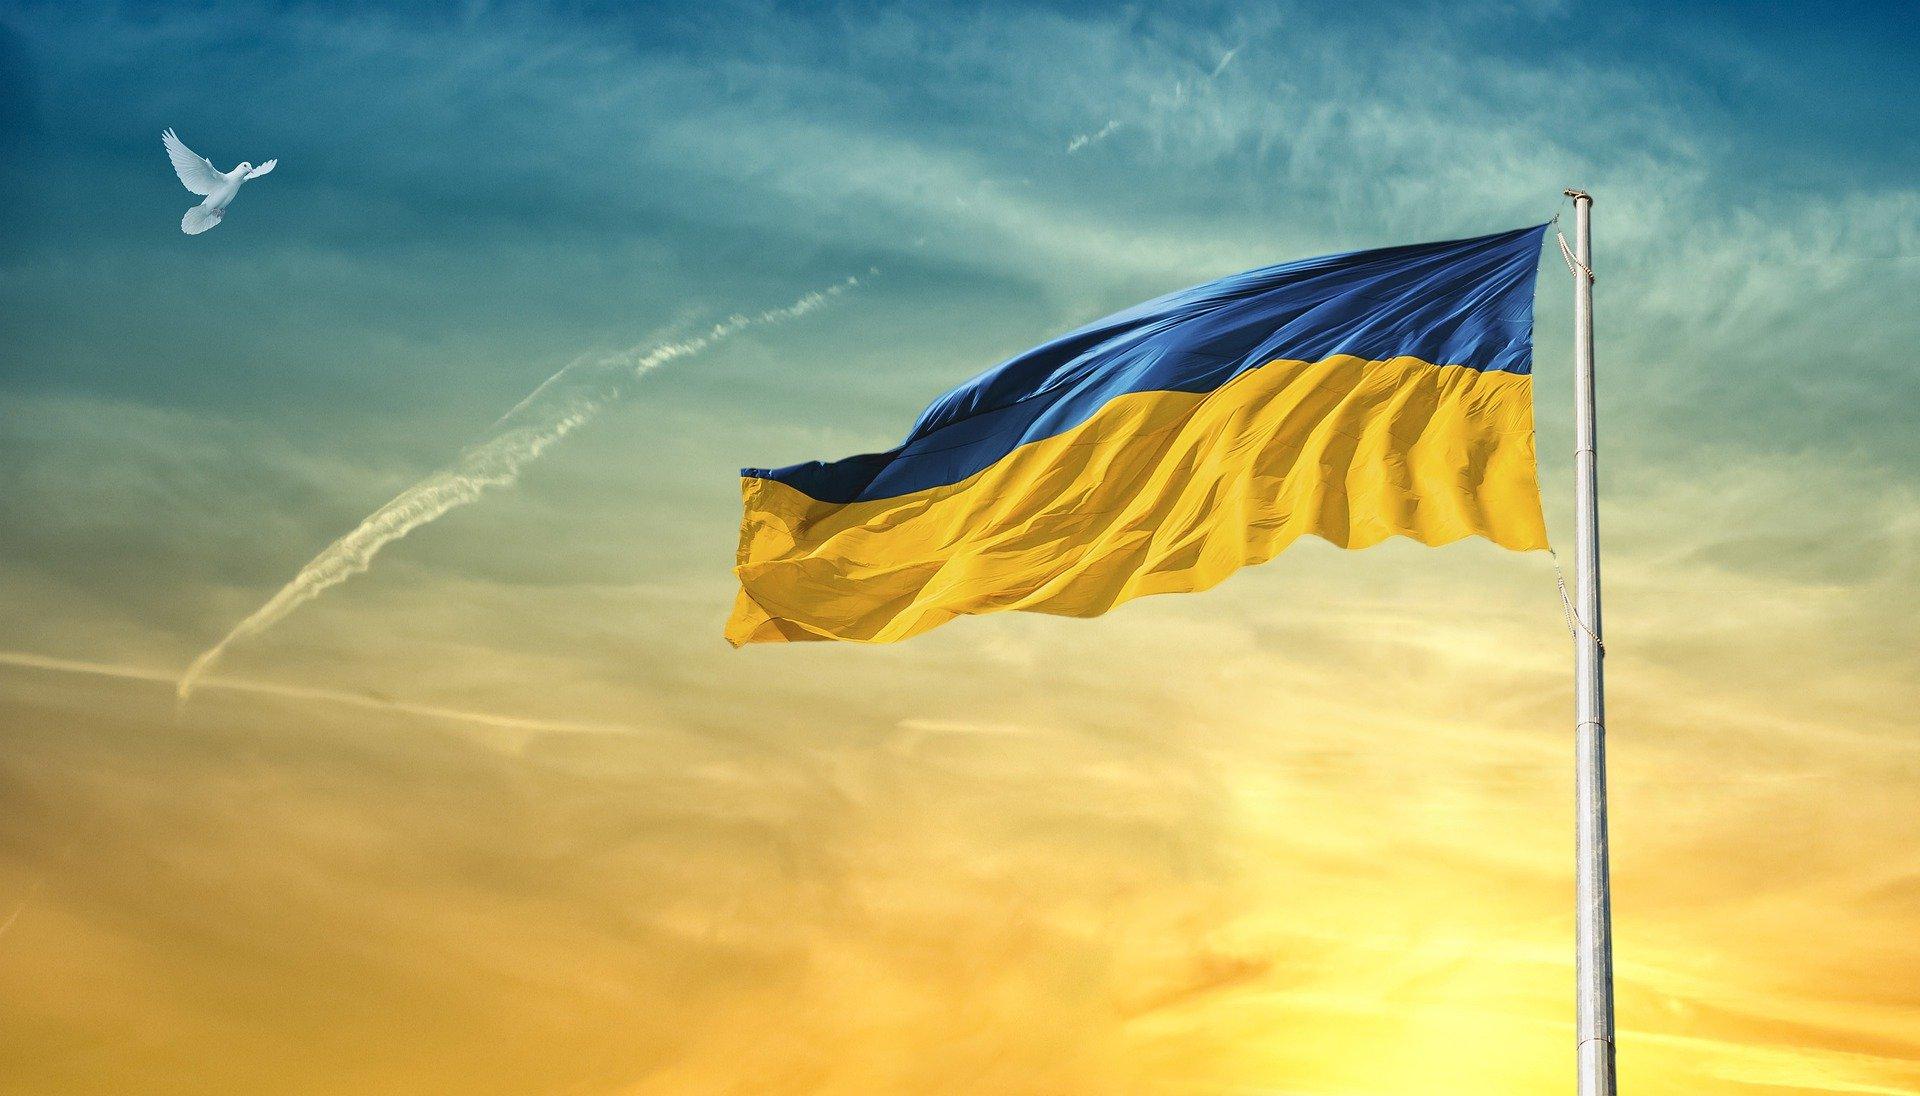 Ukrainan lippu liehumassa sinikeltaista taivasta vasten, taivaalla lentää valkoinen kyyhky.